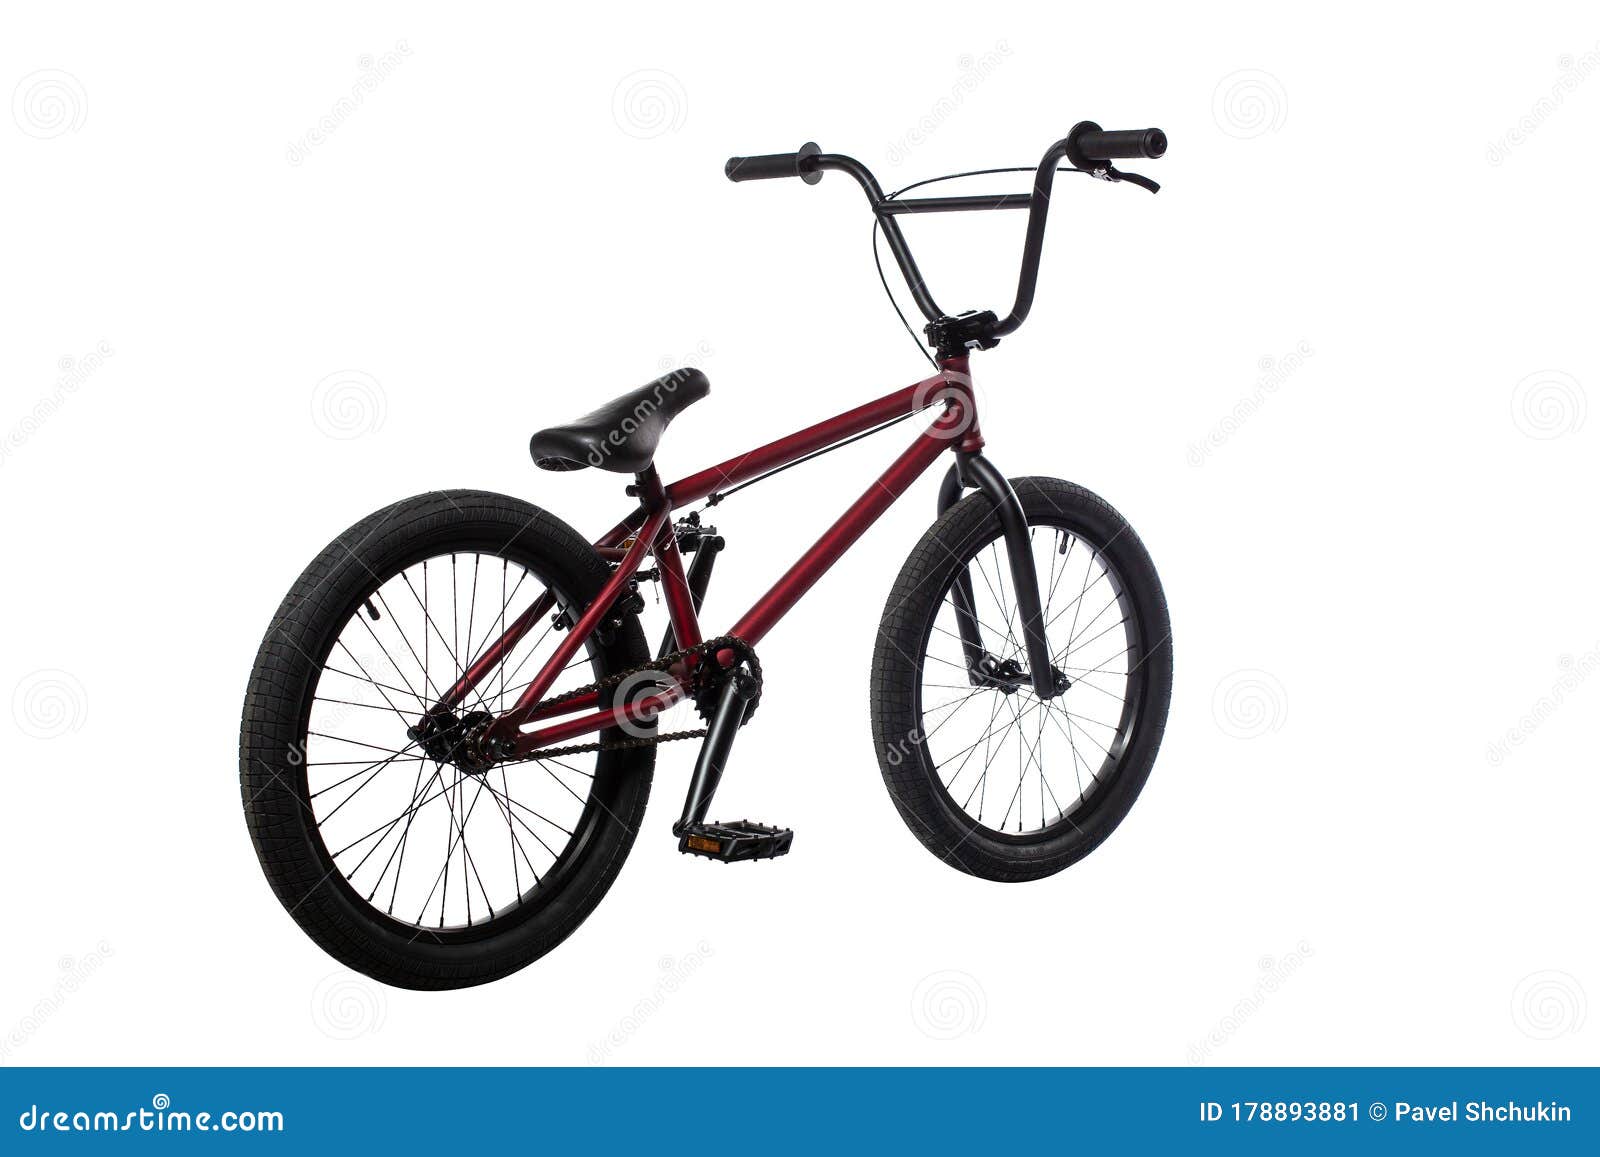 The Bmx Stunt Bike Isolated On White Background Stock Image Image Of Brake Steel 178893881